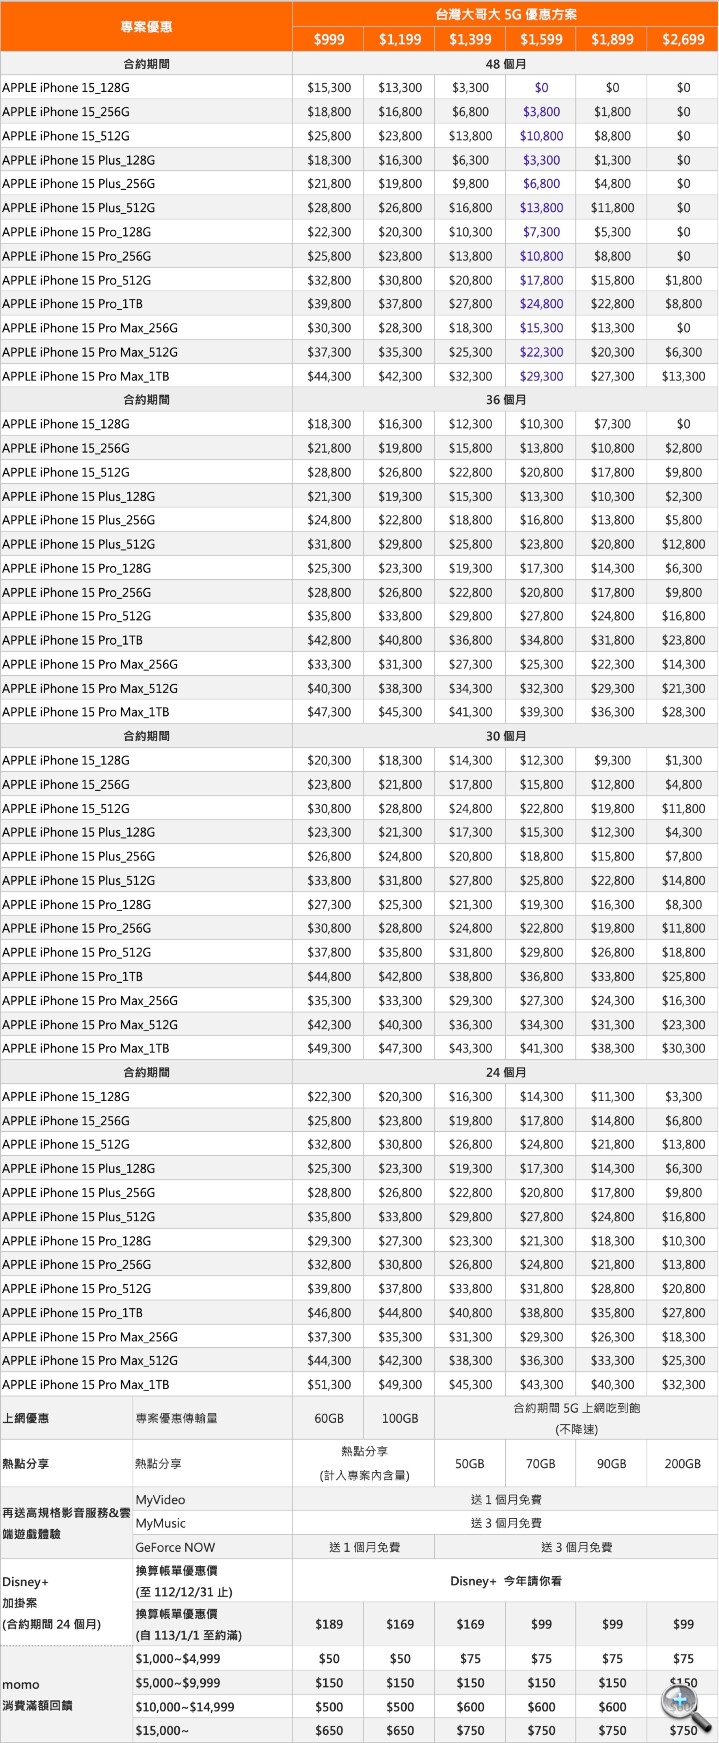 iPhone 15 中華電信、遠傳電信、台灣大哥大綁約購機資費方案統整